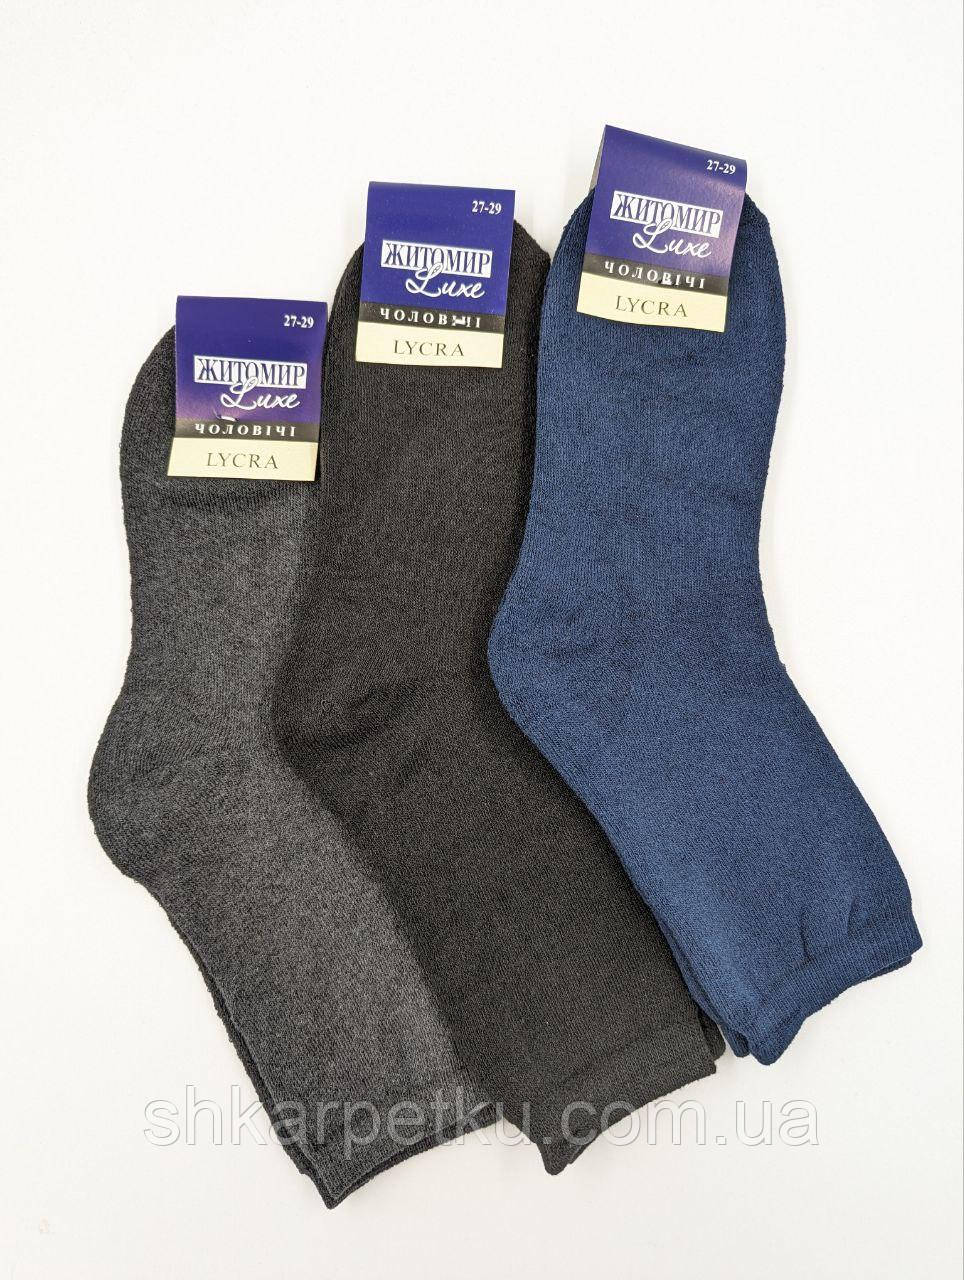 Чоловічі махрові шкарпетки Житомир Luxe махра, однотонні зимові бавовна. 12 пар/пач. асорті 39-42